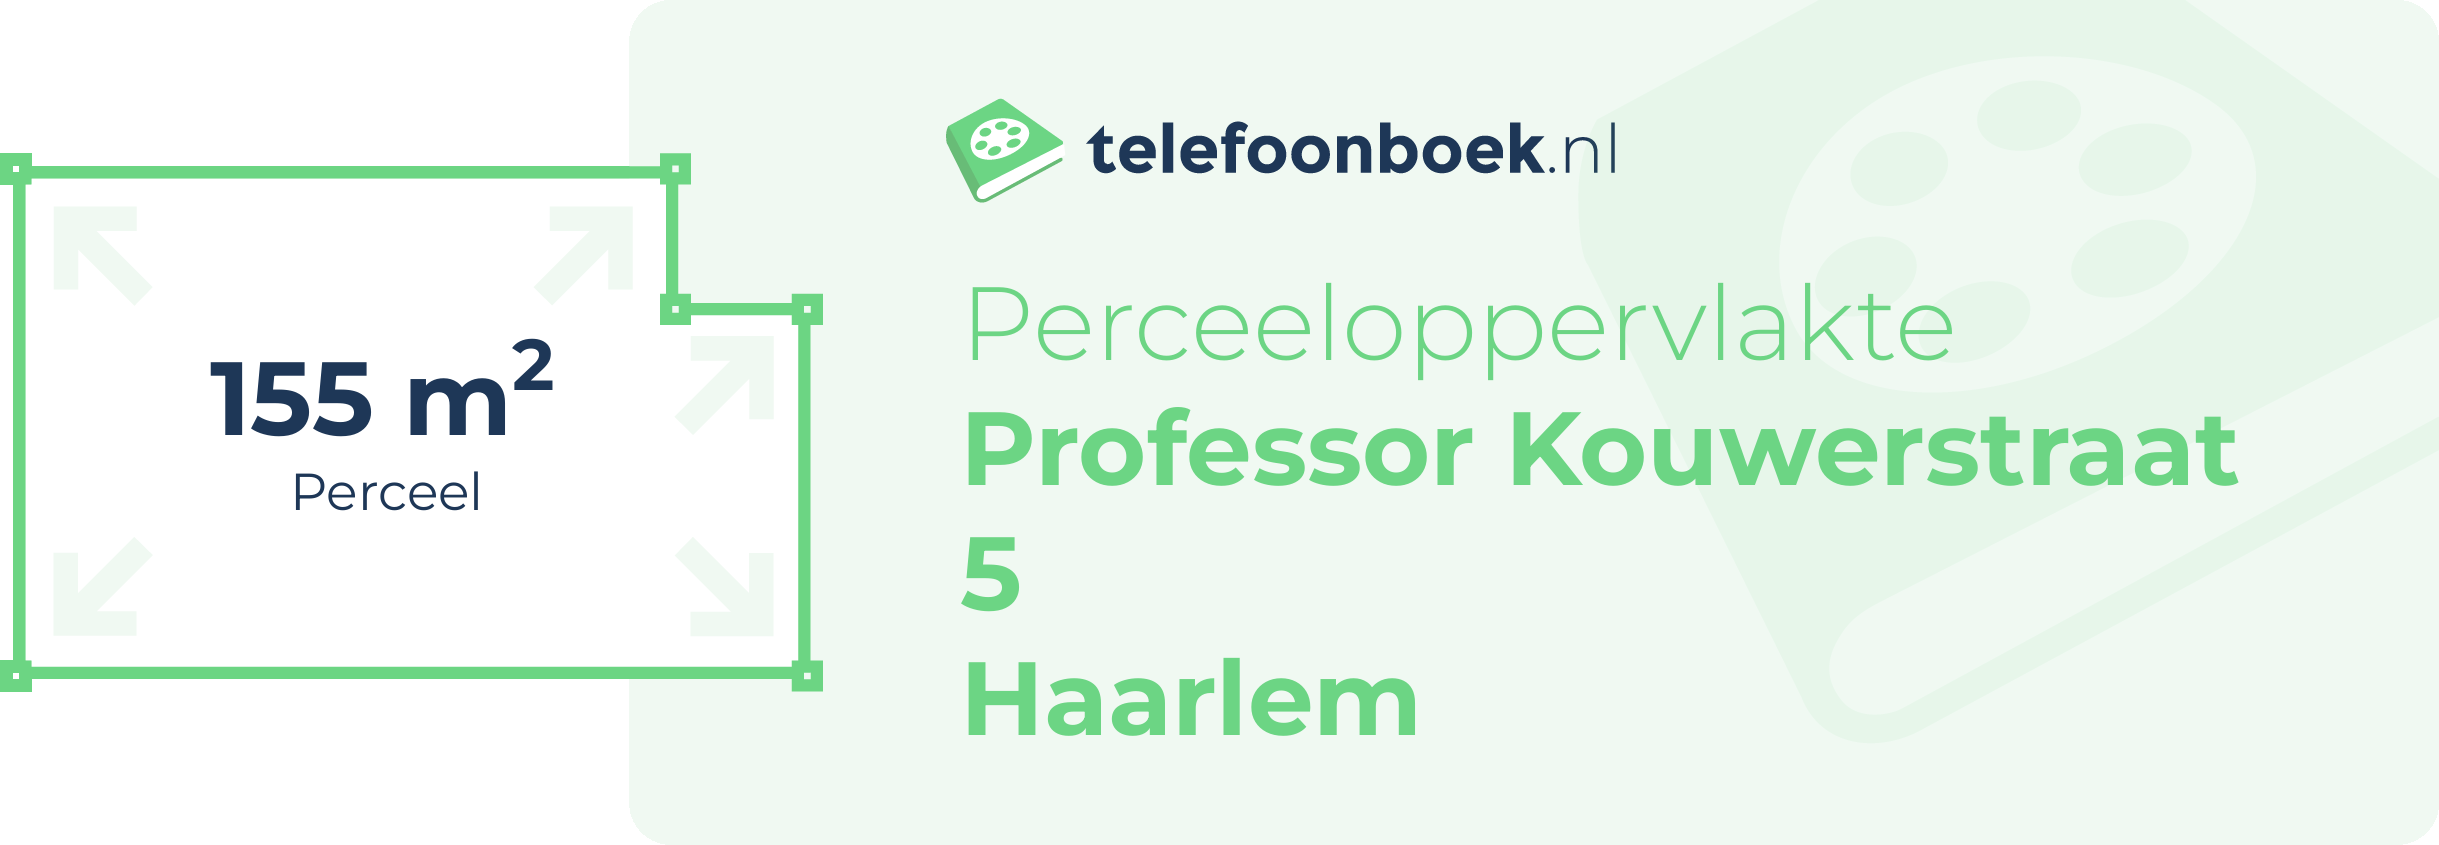 Perceeloppervlakte Professor Kouwerstraat 5 Haarlem